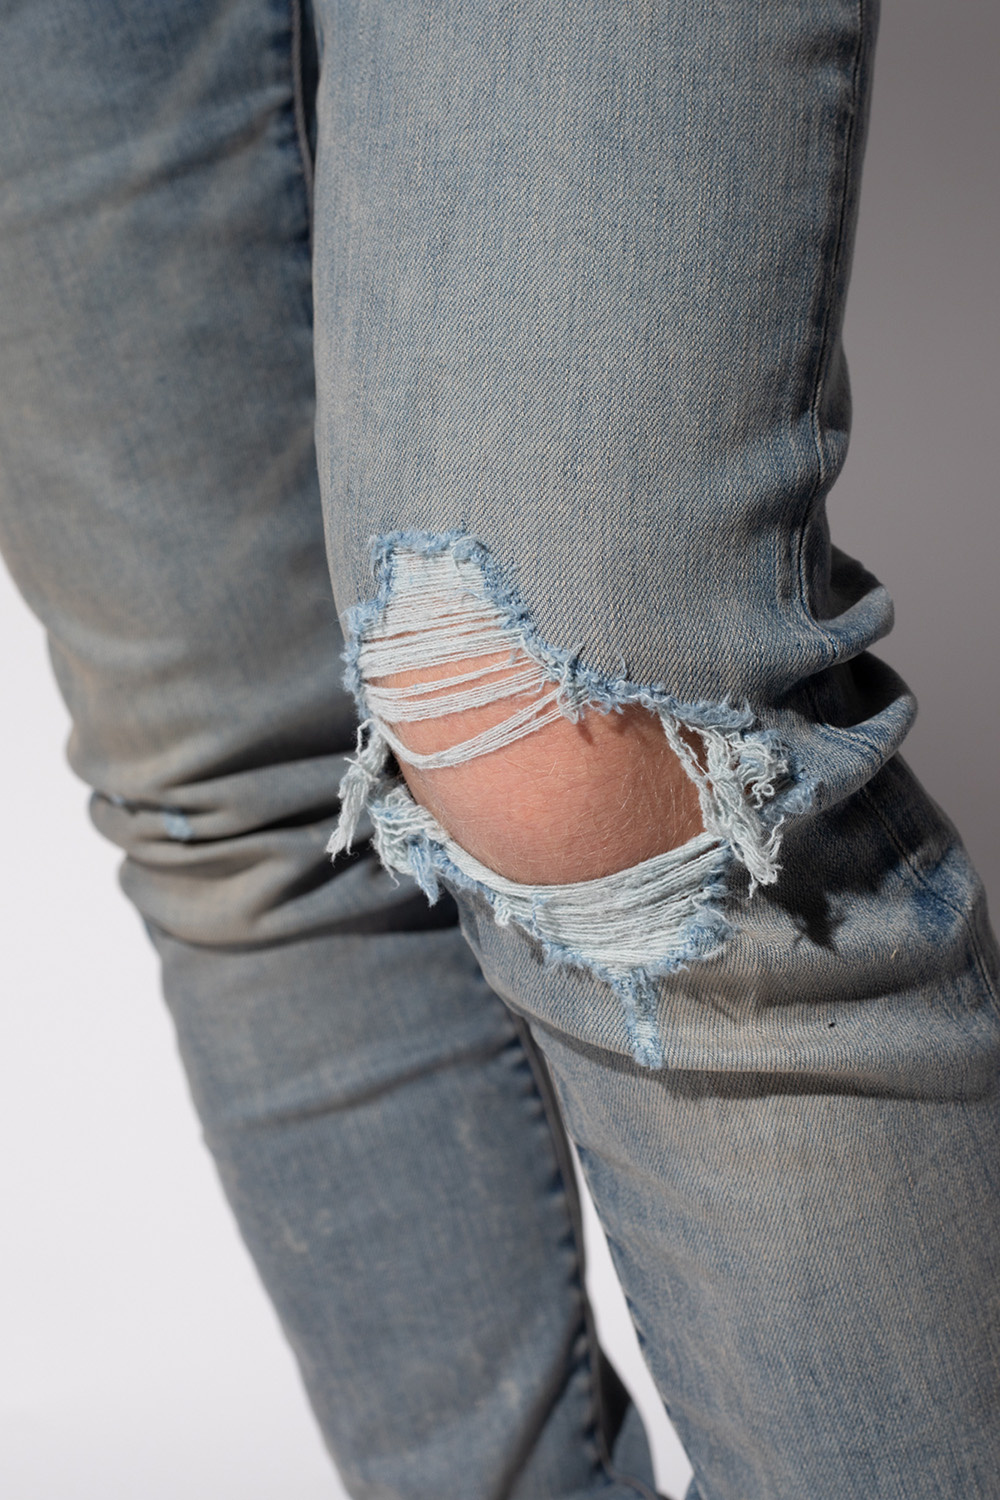 Amiri À vendre jean bleu foncé en très bon état de la marque verbaudet taille 3 ans